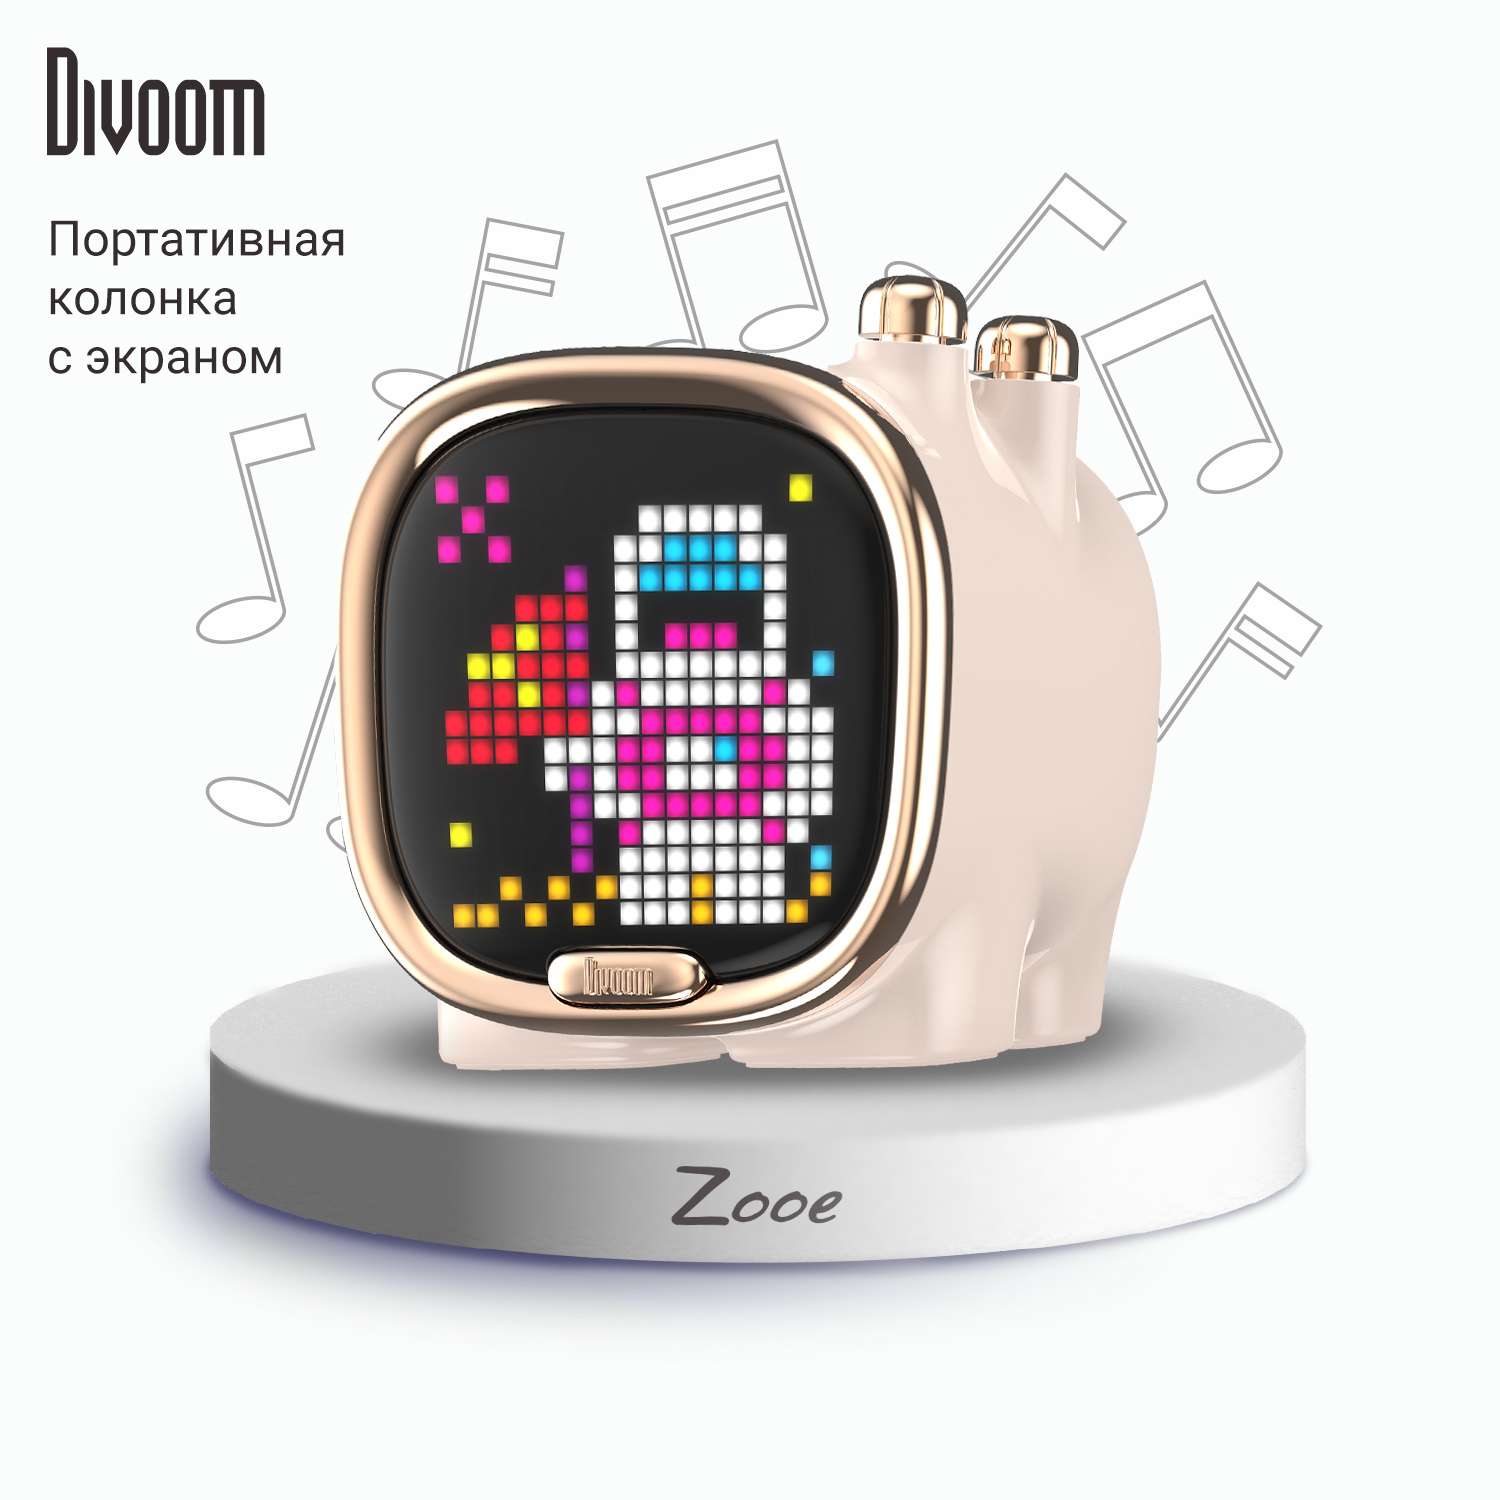 Беспроводная колонка DIVOOM портативная Zooe розовая с пиксельным LED-дисплеем - фото 1